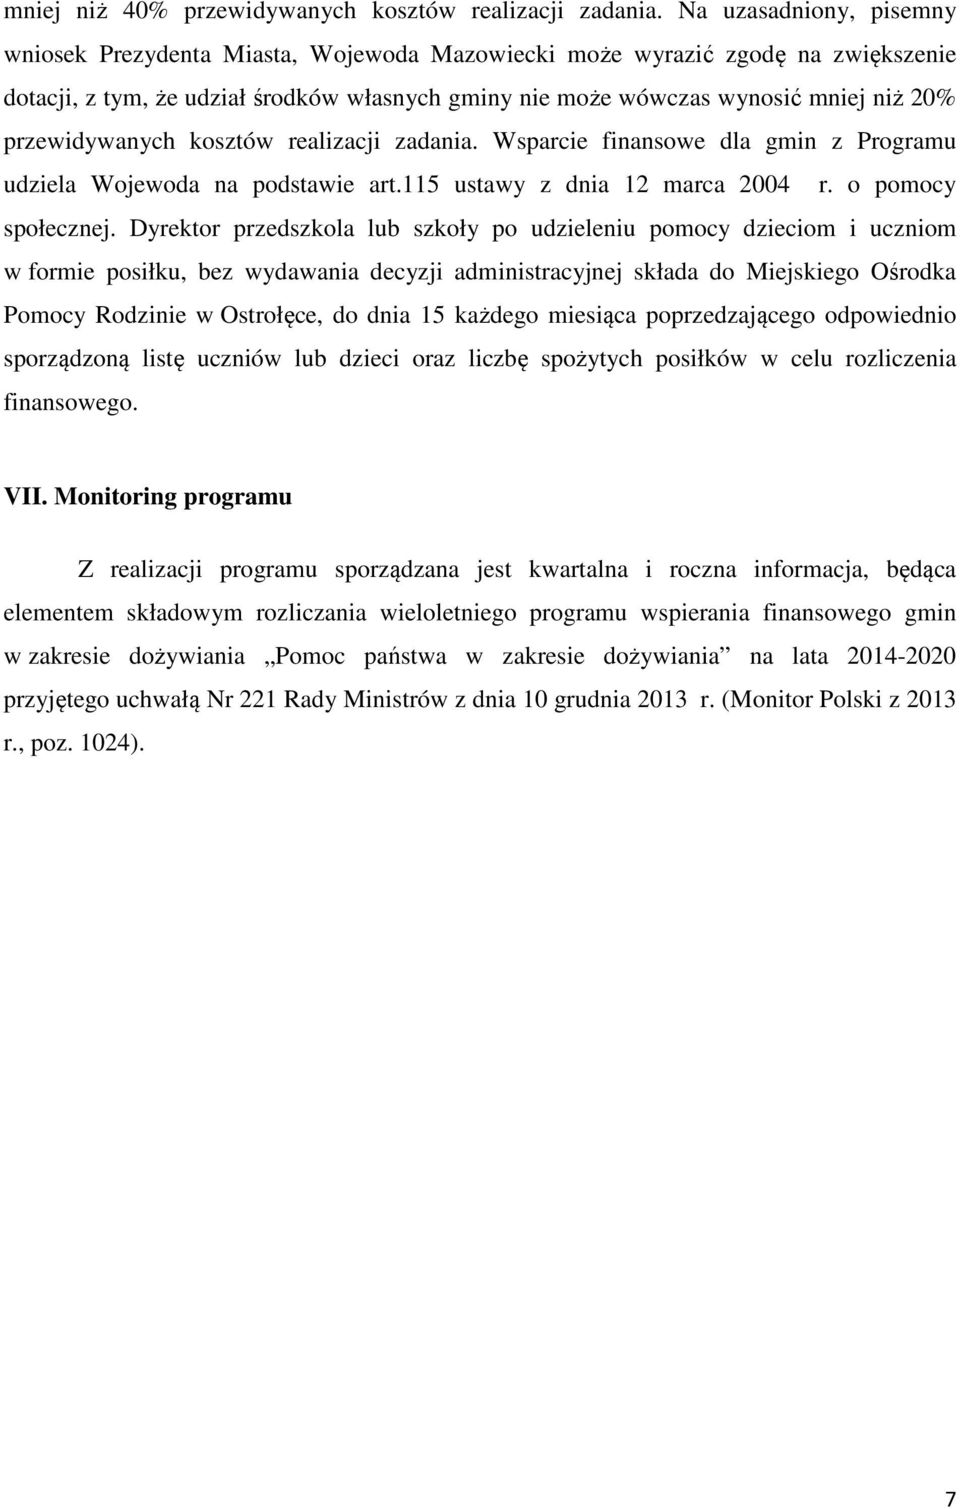 przewidywanych kosztów realizacji zadania. Wsparcie finansowe dla gmin z Programu udziela Wojewoda na podstawie art.115 ustawy z dnia 12 marca 2004 r. o pomocy społecznej.